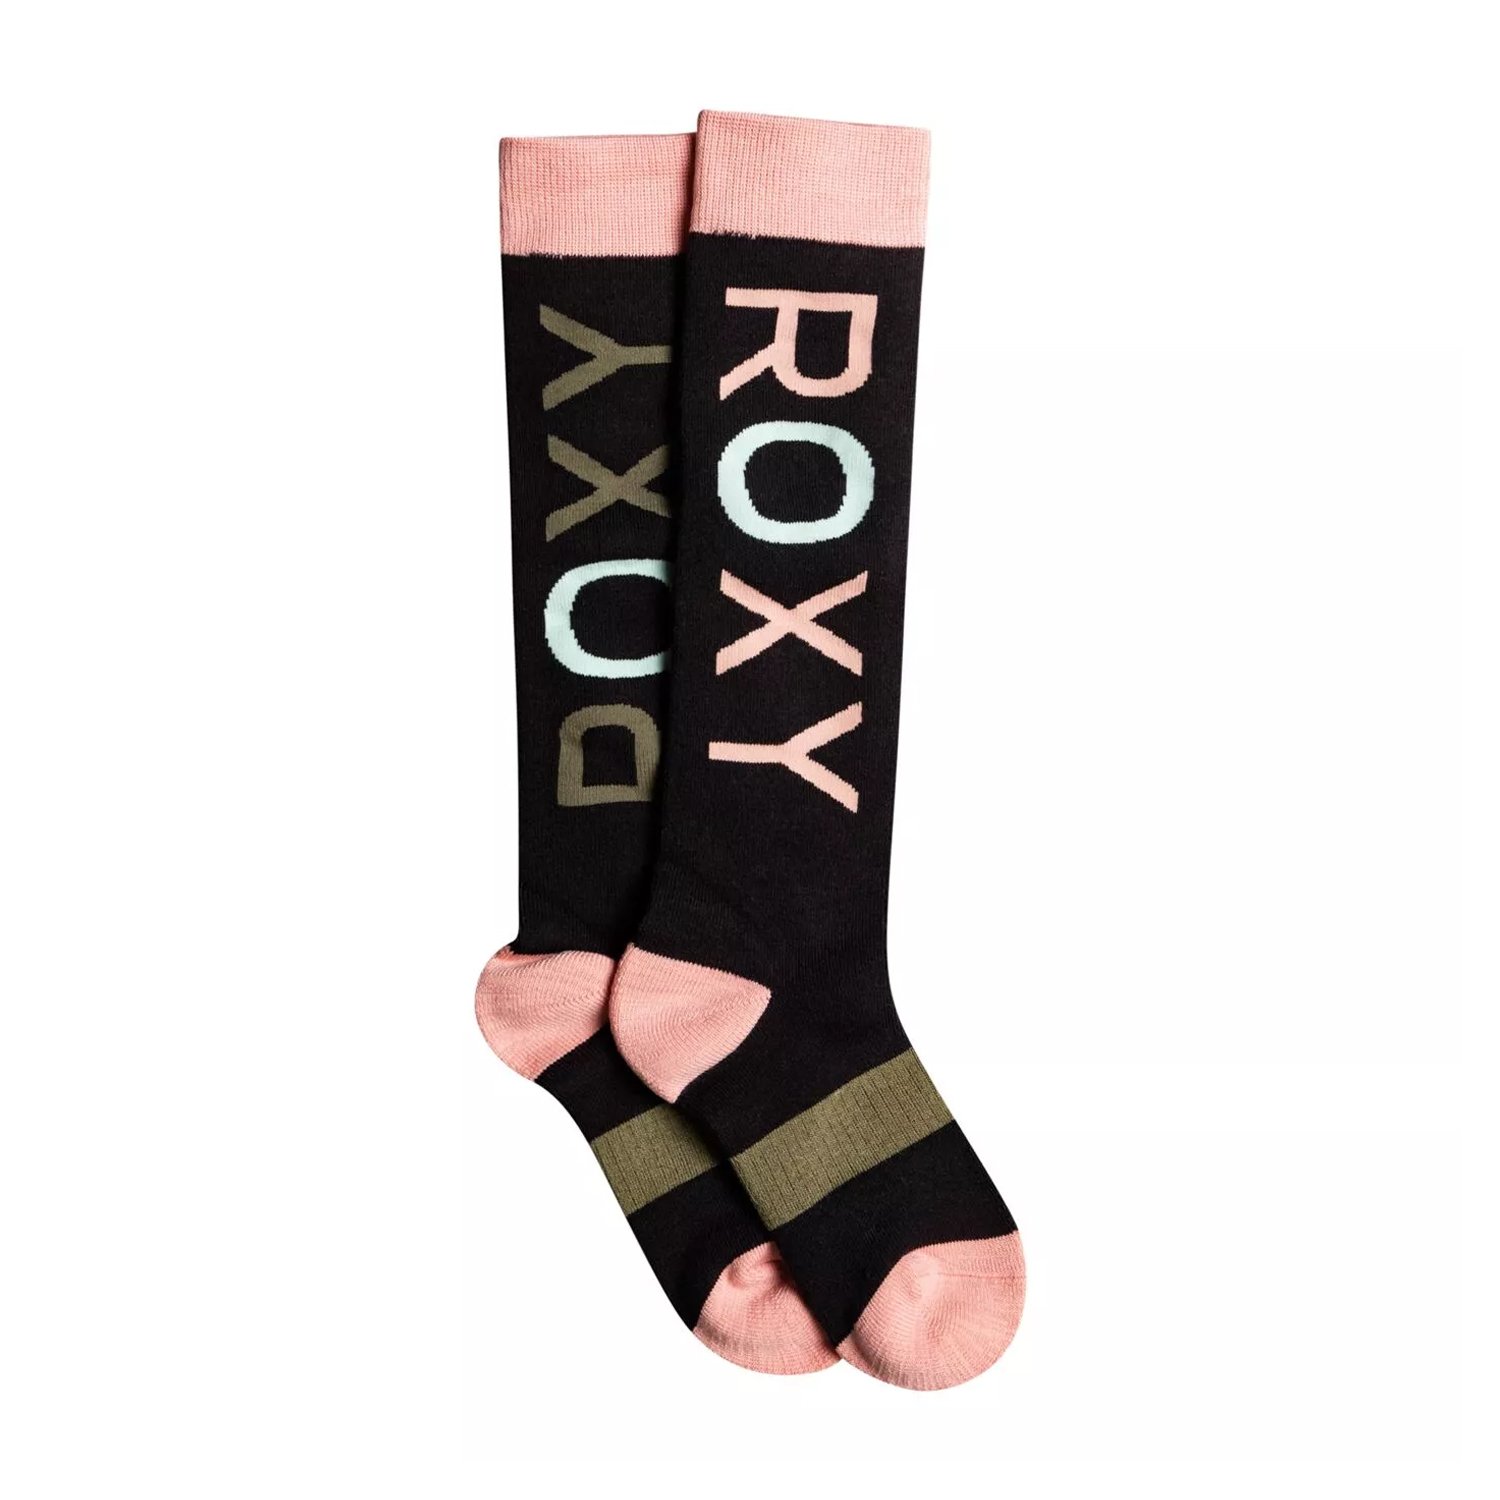 Roxy Frosty Çocuk Kayak/Snowboard Çorabı - Siyah - 1